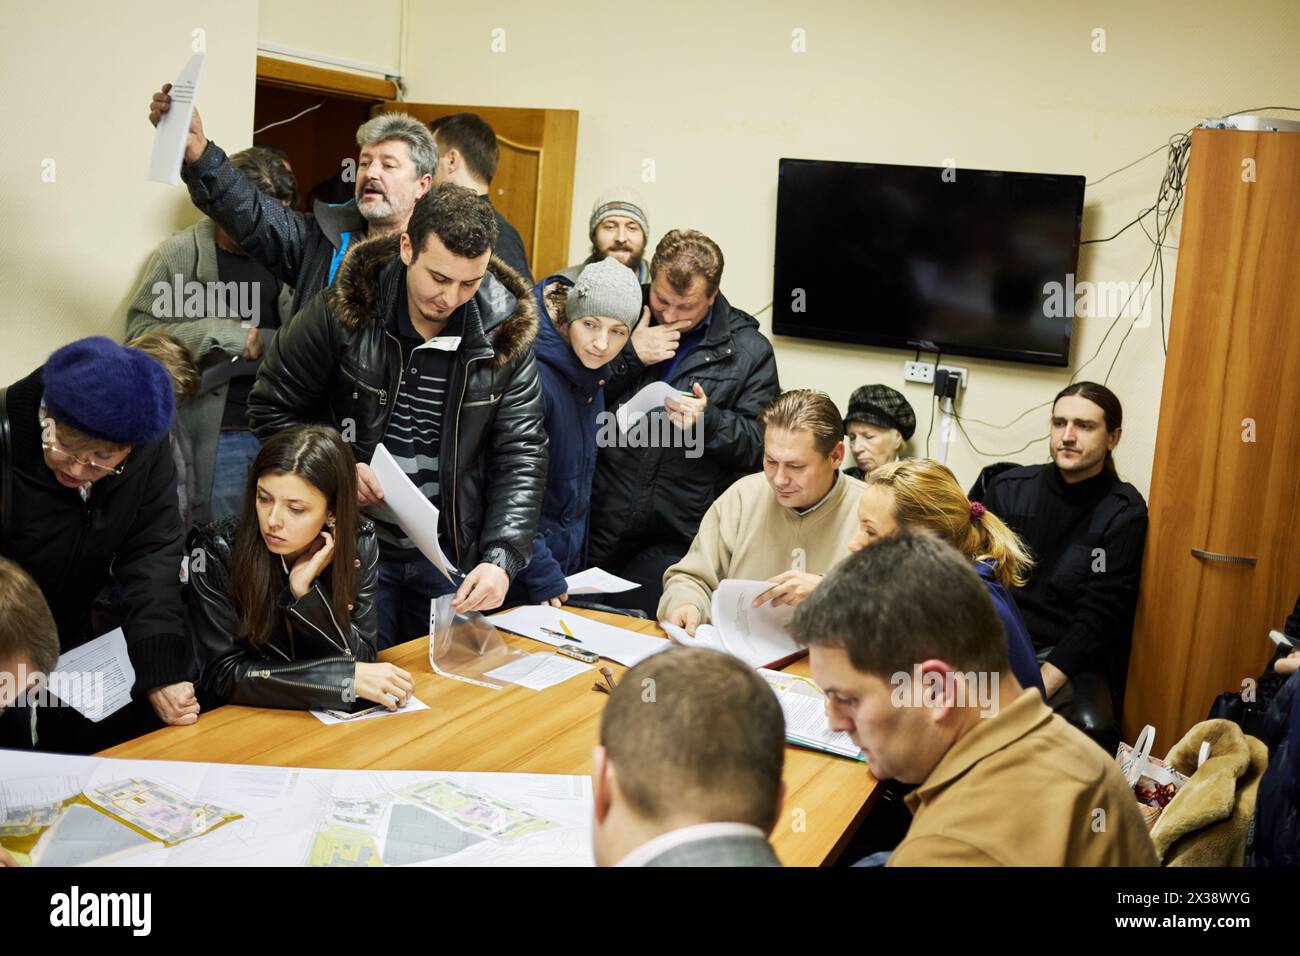 MOSCA, RUSSIA - 11 novembre 2015: I proprietari di complessi residenziali discutono i terreni assegnati nel distretto di Bogorodskoe durante l'audizione pubblica. Foto Stock